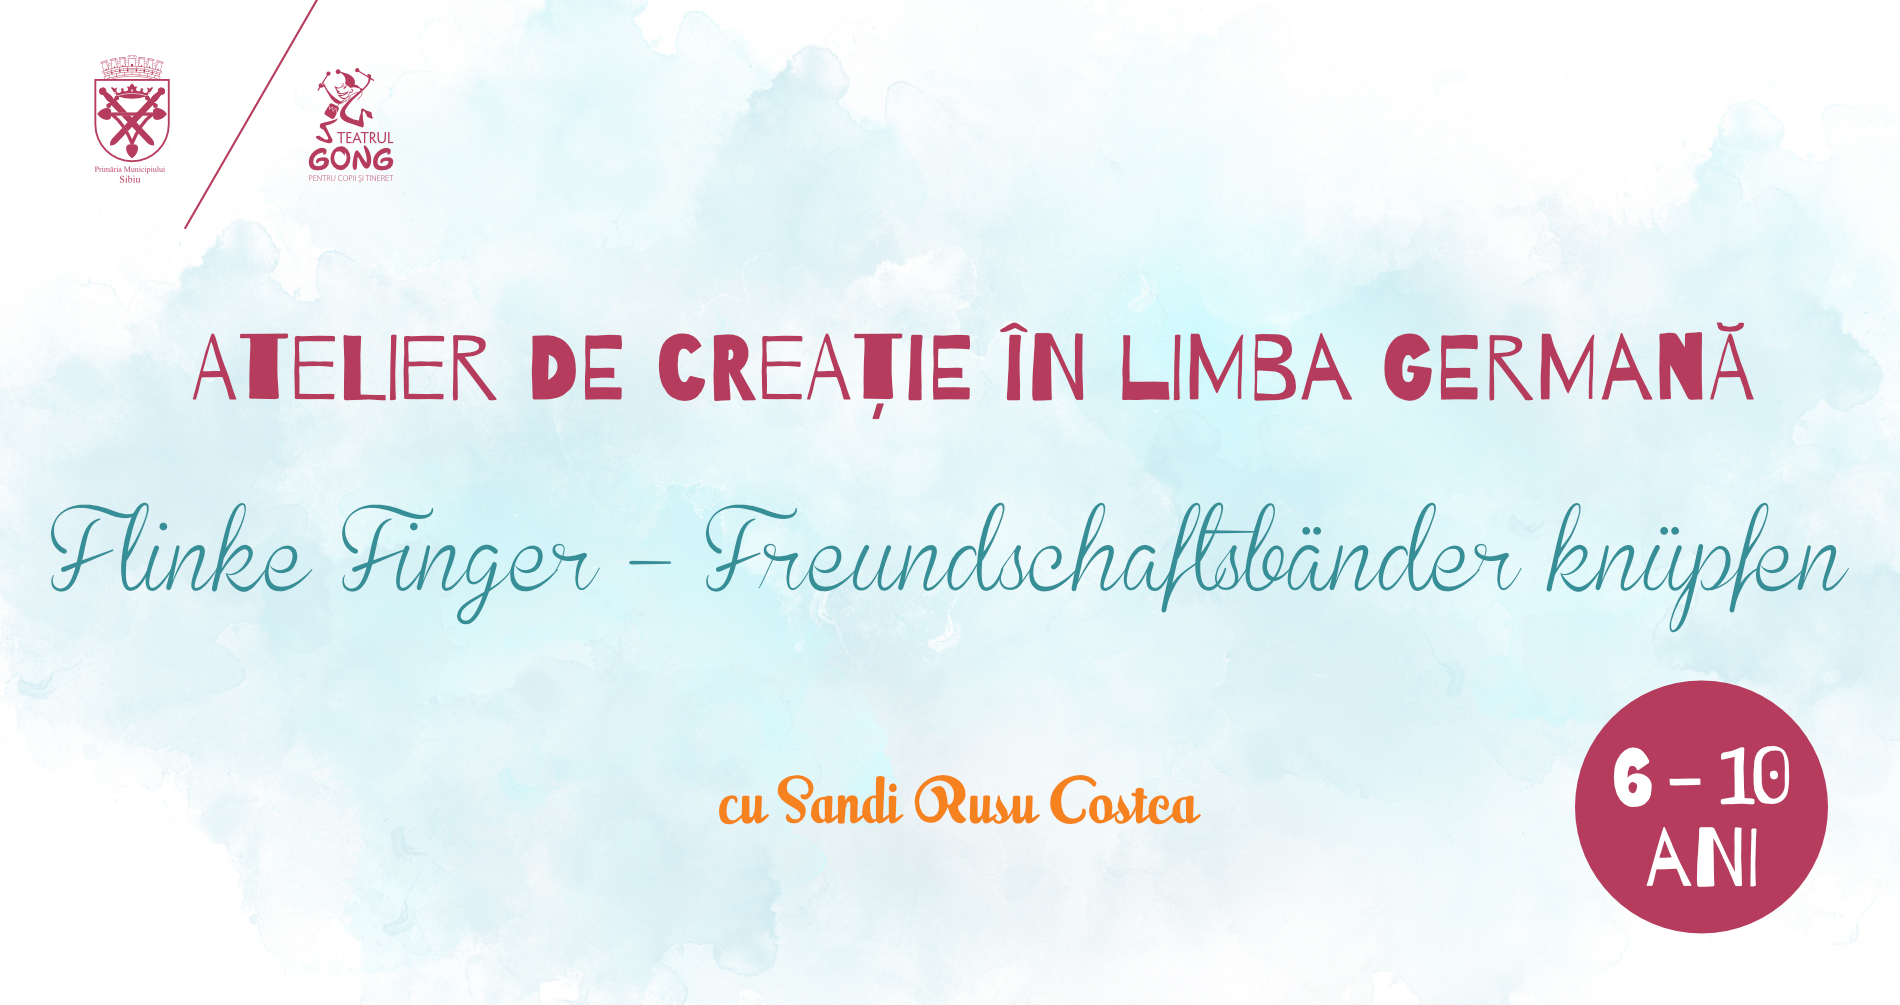 Atelier de creație în limba germană „Flinke Finger” – Brățările împletite